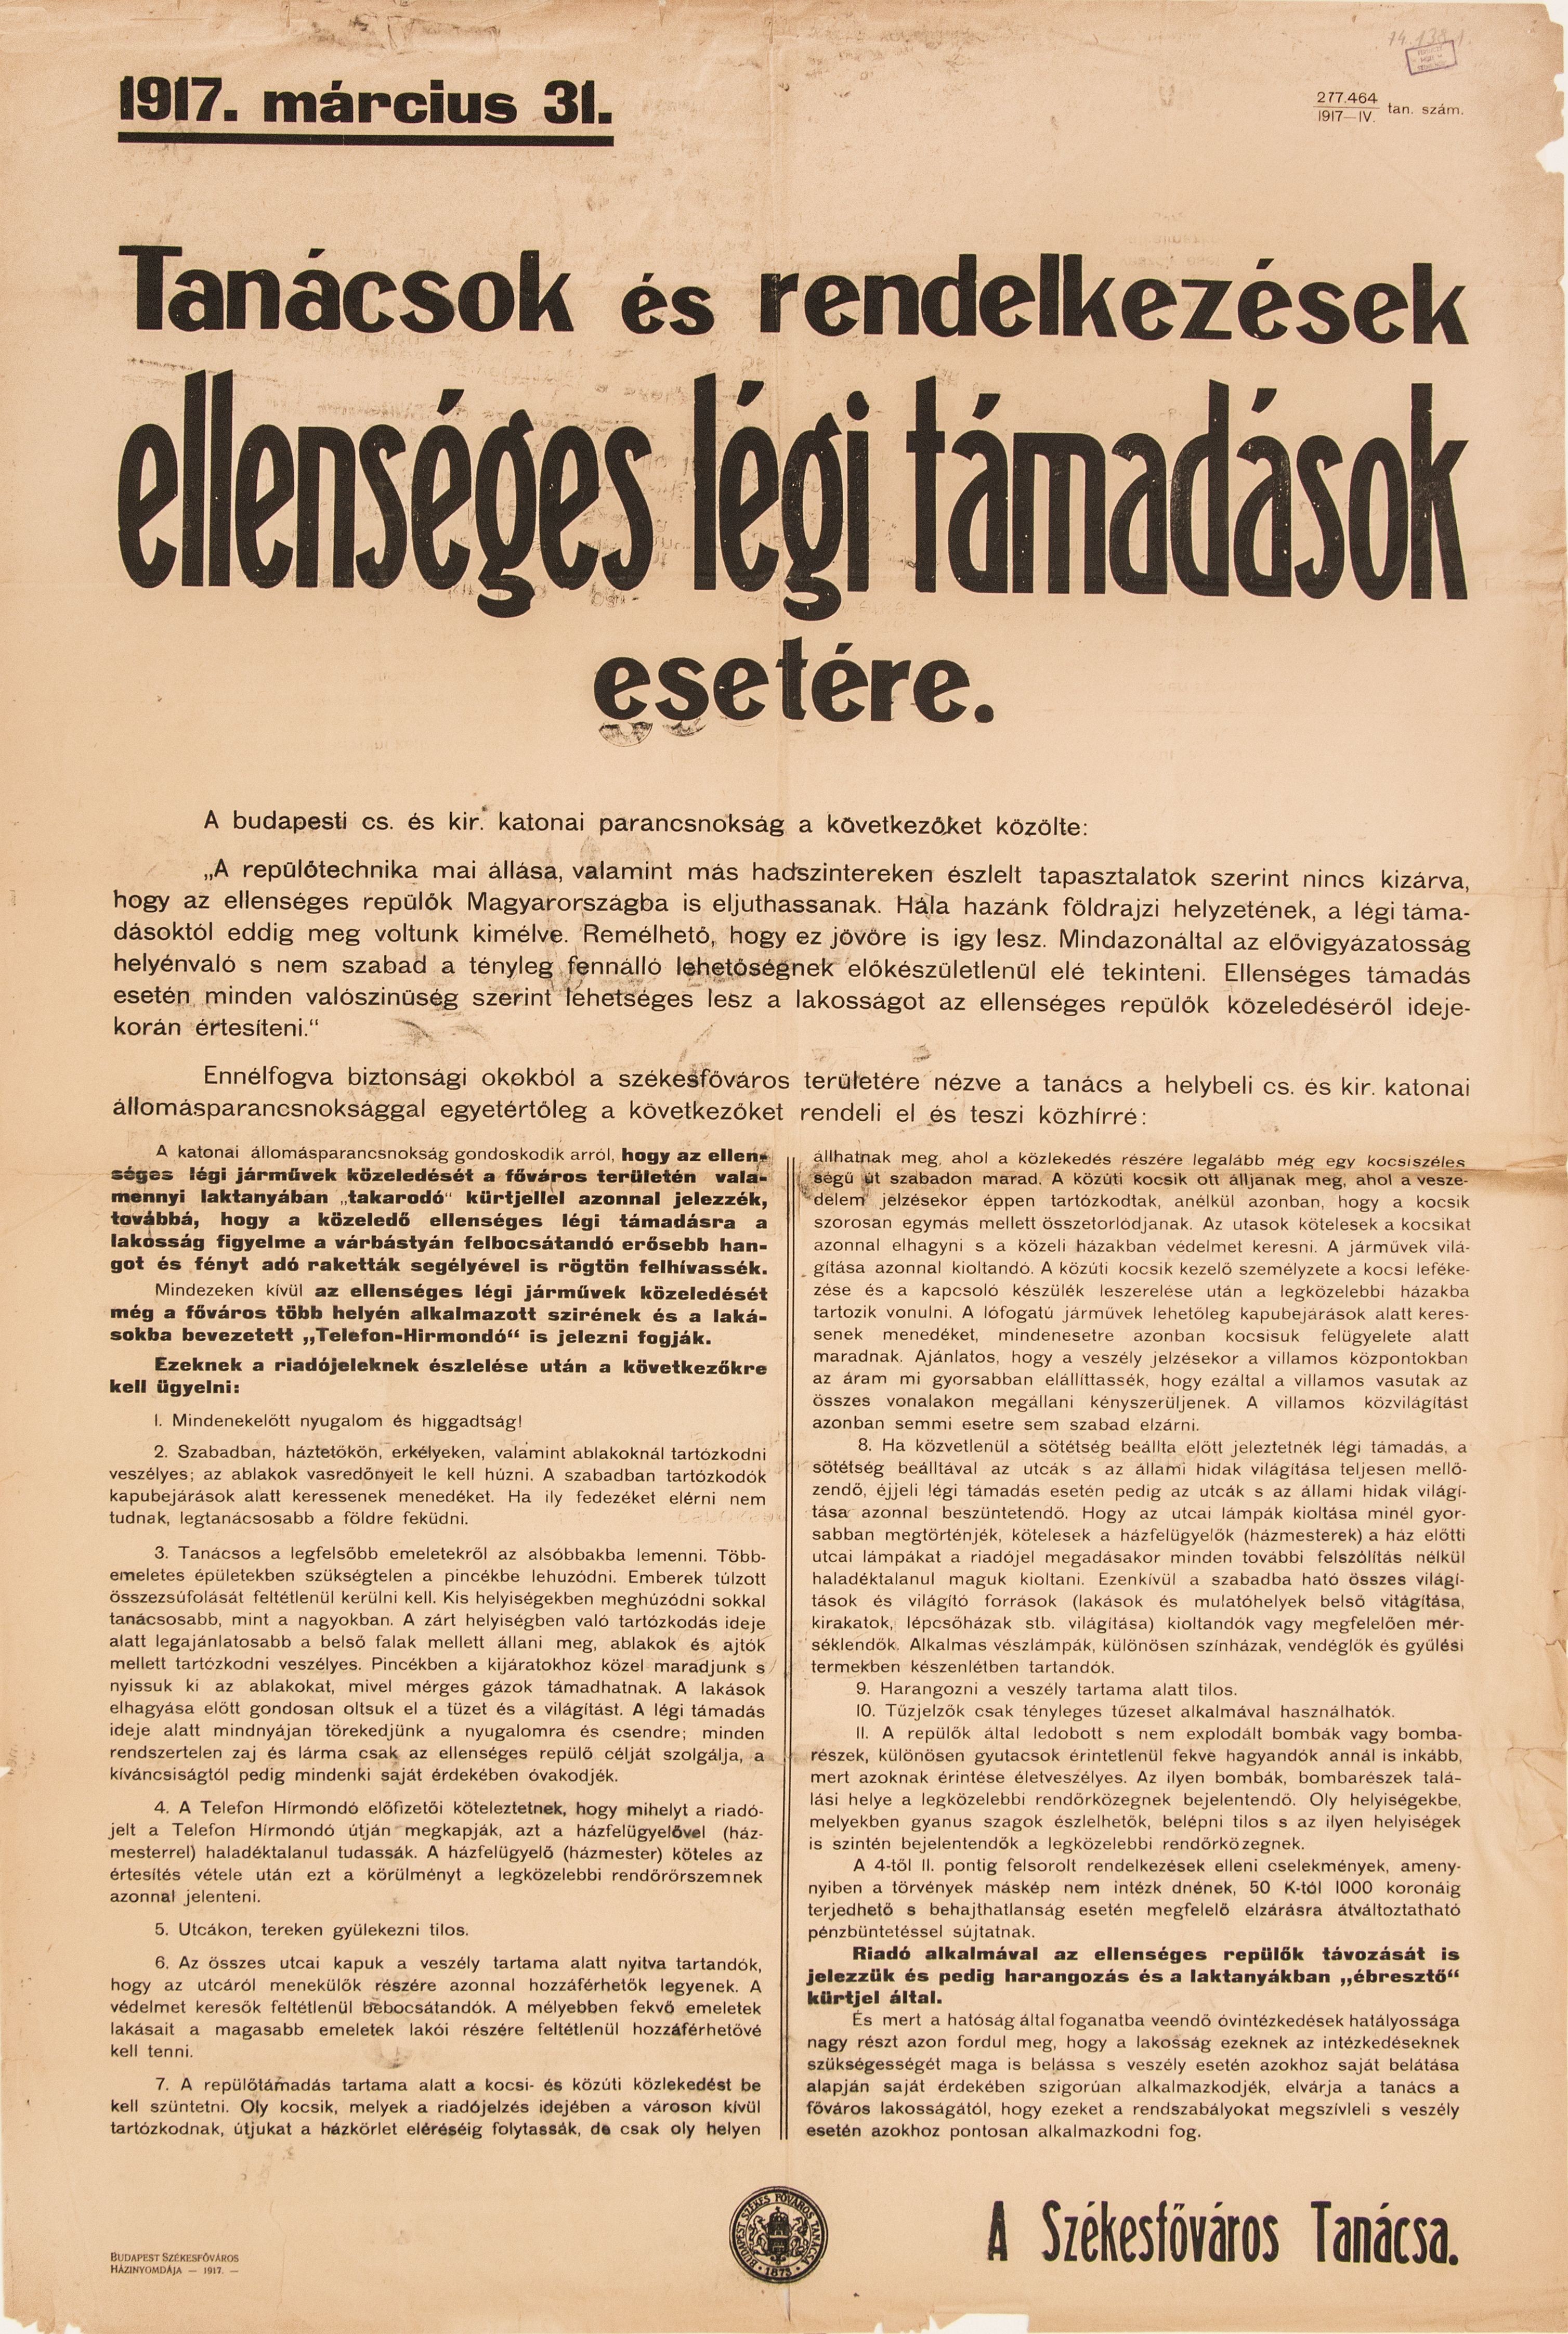 Tanácsok és rendelkezések legitámadások esetére, 1917.03.31. (Ferenczy Múzeumi Centrum CC BY-NC-SA)